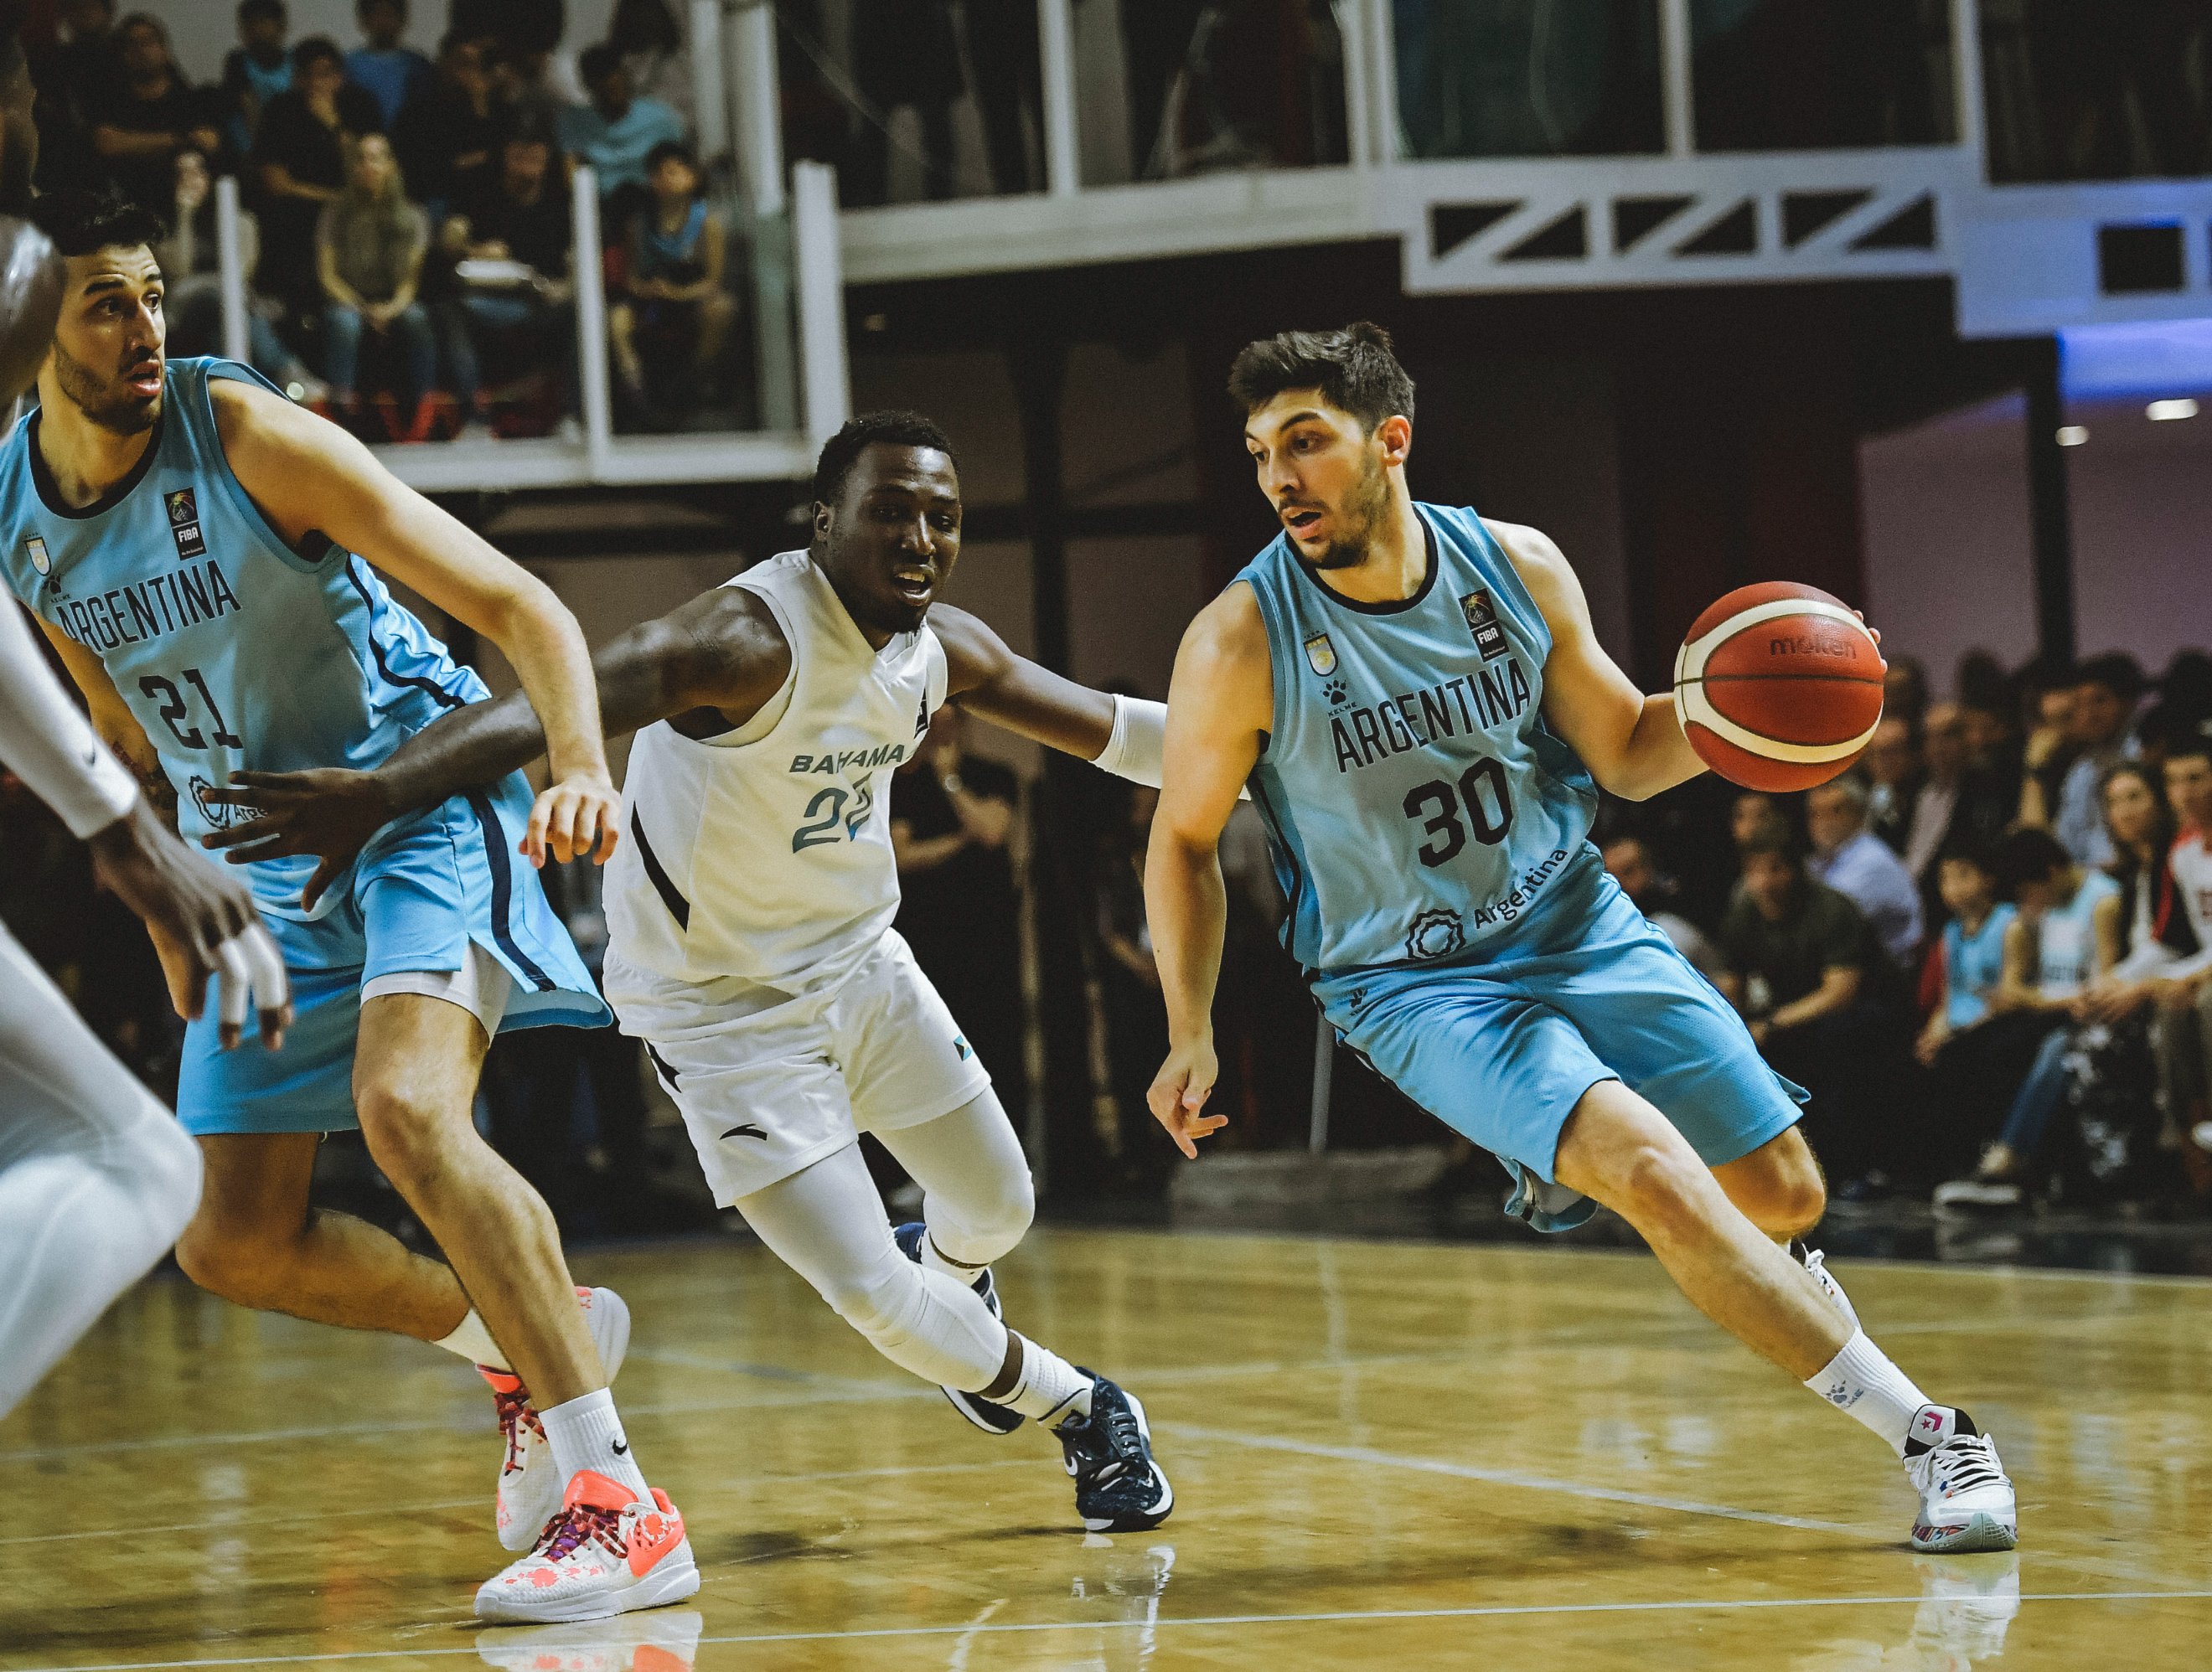 Argentina define convocados do basquete para as Olimpíadas de Tóquio - LIVE  BASKETBALL BR